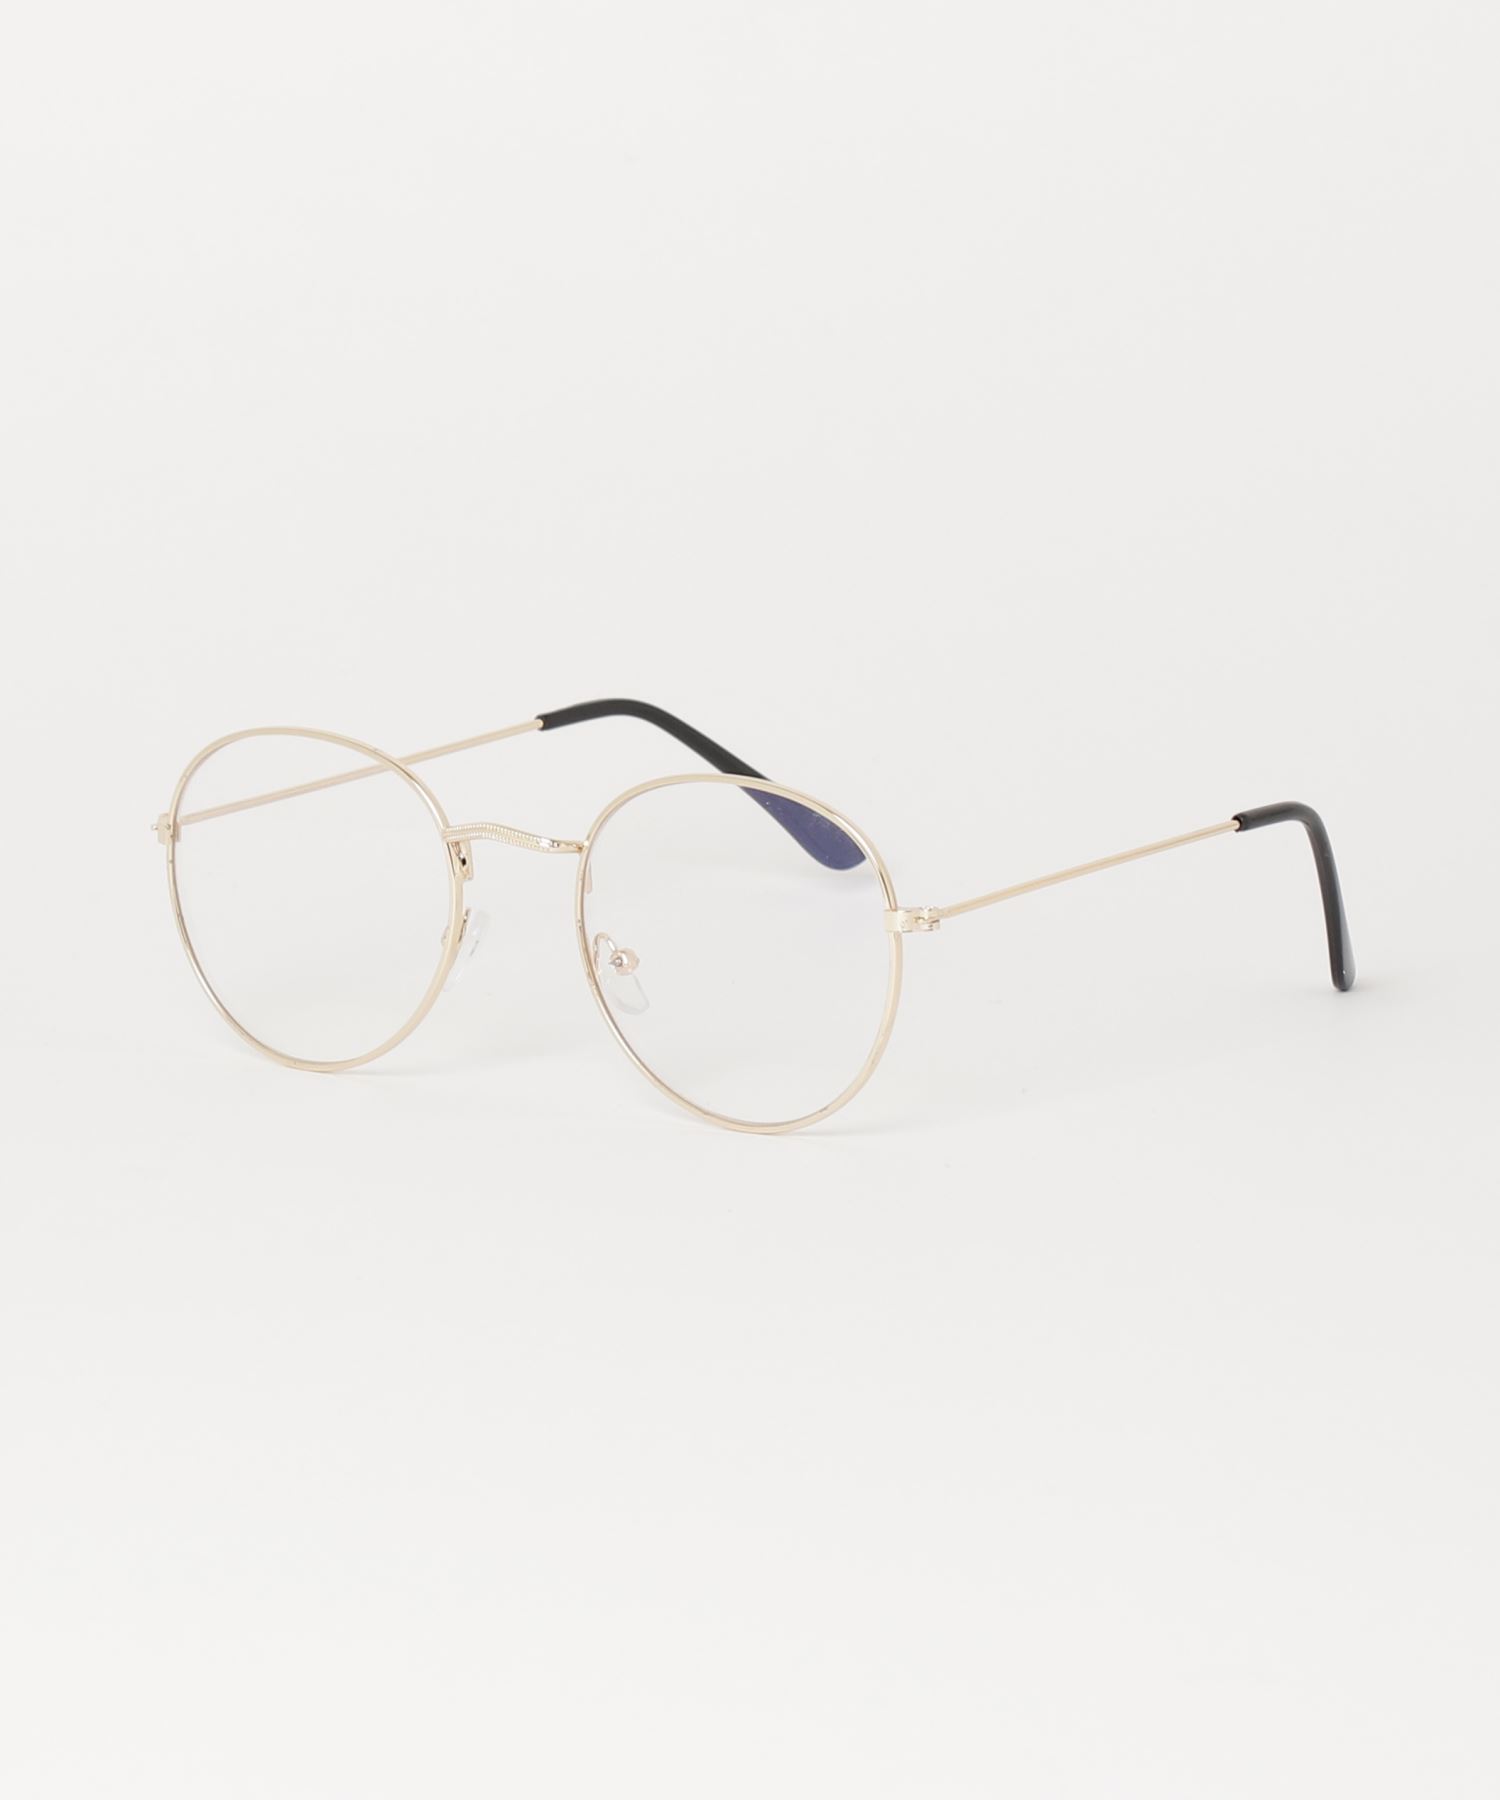 A'GEM/9 × .kom『.kom SELECT/ドットケーオーエムセレクト』Fashon Glass/ファッション眼鏡 メガネ